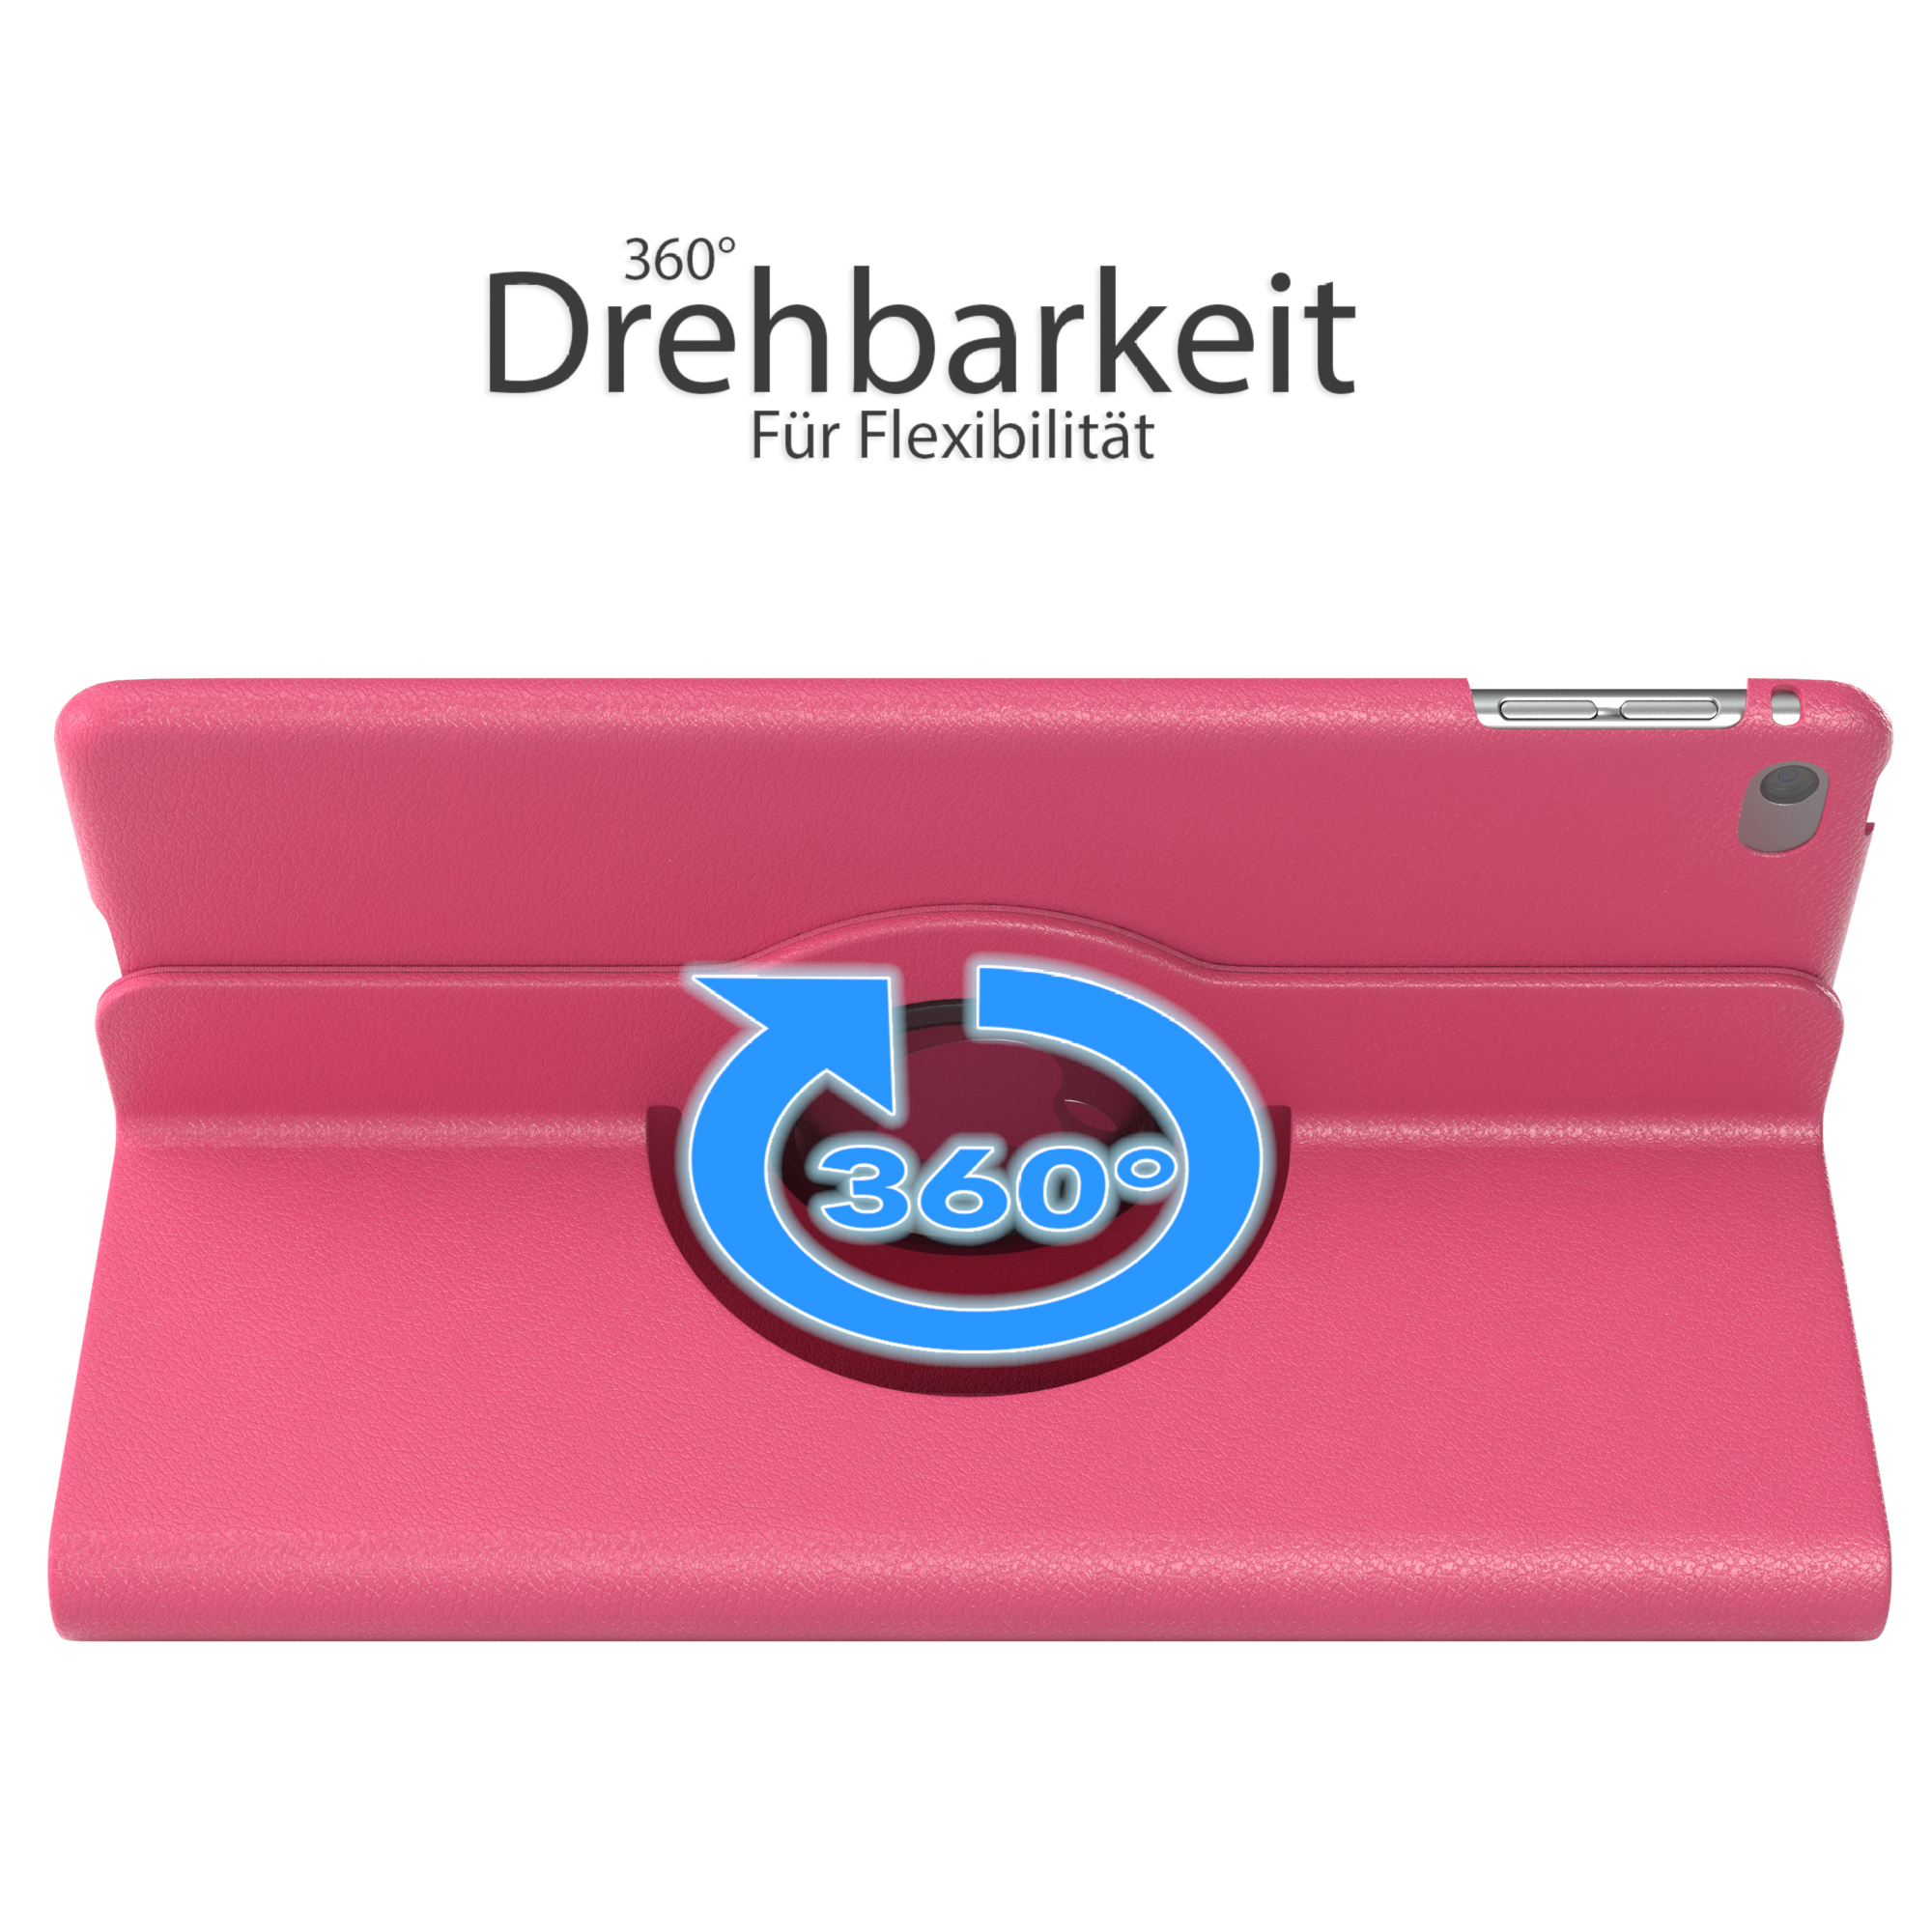 EAZY CASE Schutzhülle iPad 2019 5 Mini Pink für 7.9\